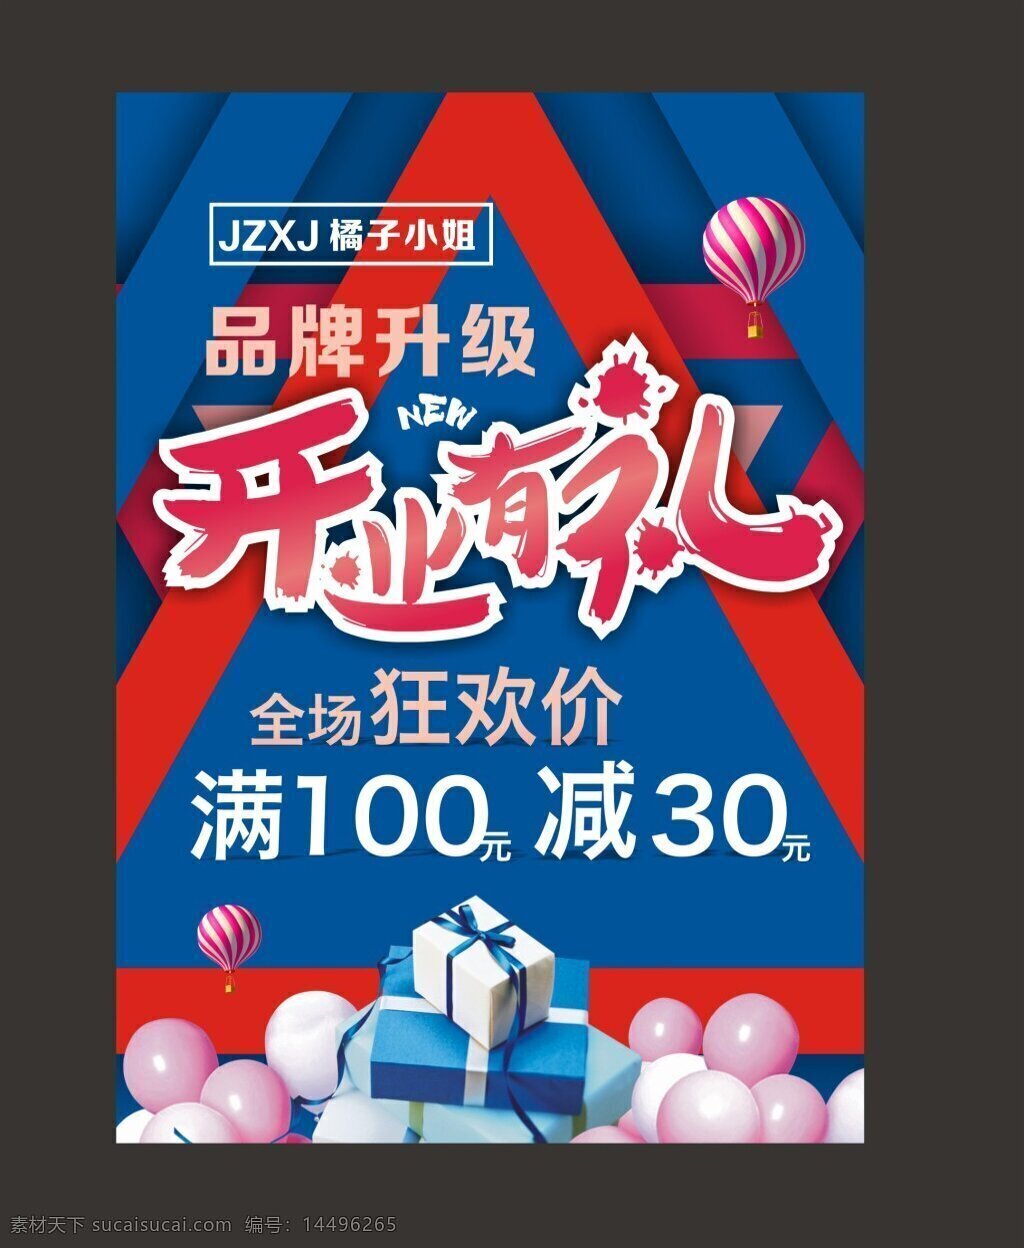 开业有礼海报 开业 红色 蓝色 气球 装修 狂欢 礼包 大减价 促销 活动